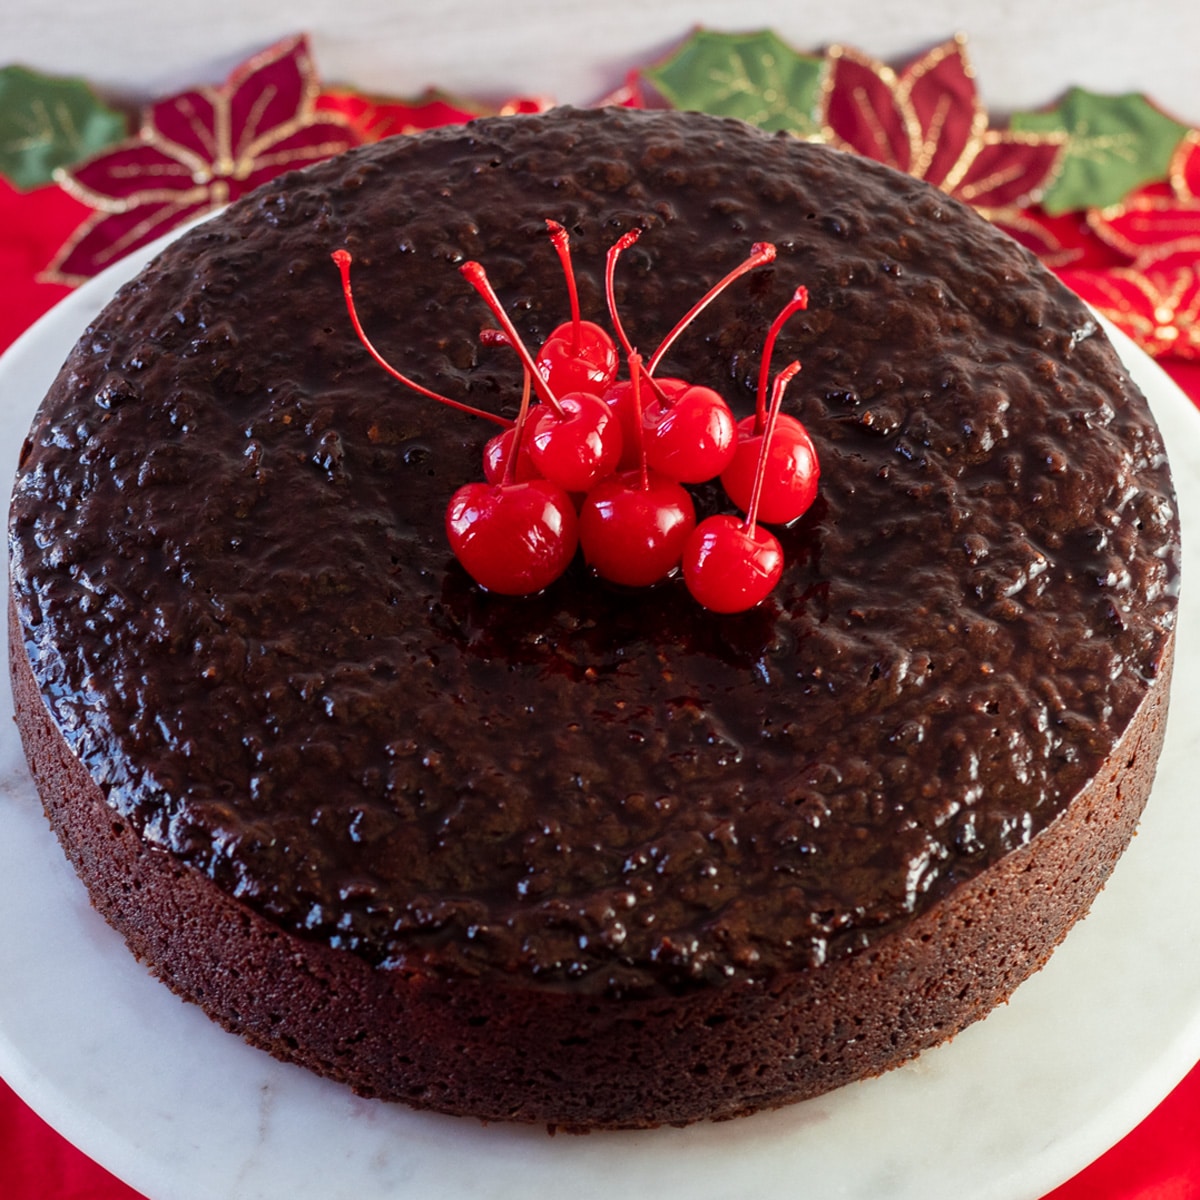 Imagen cuadrada mirando hacia abajo sobre el pastel negro jamaicano, con cerezas encima del pastel.